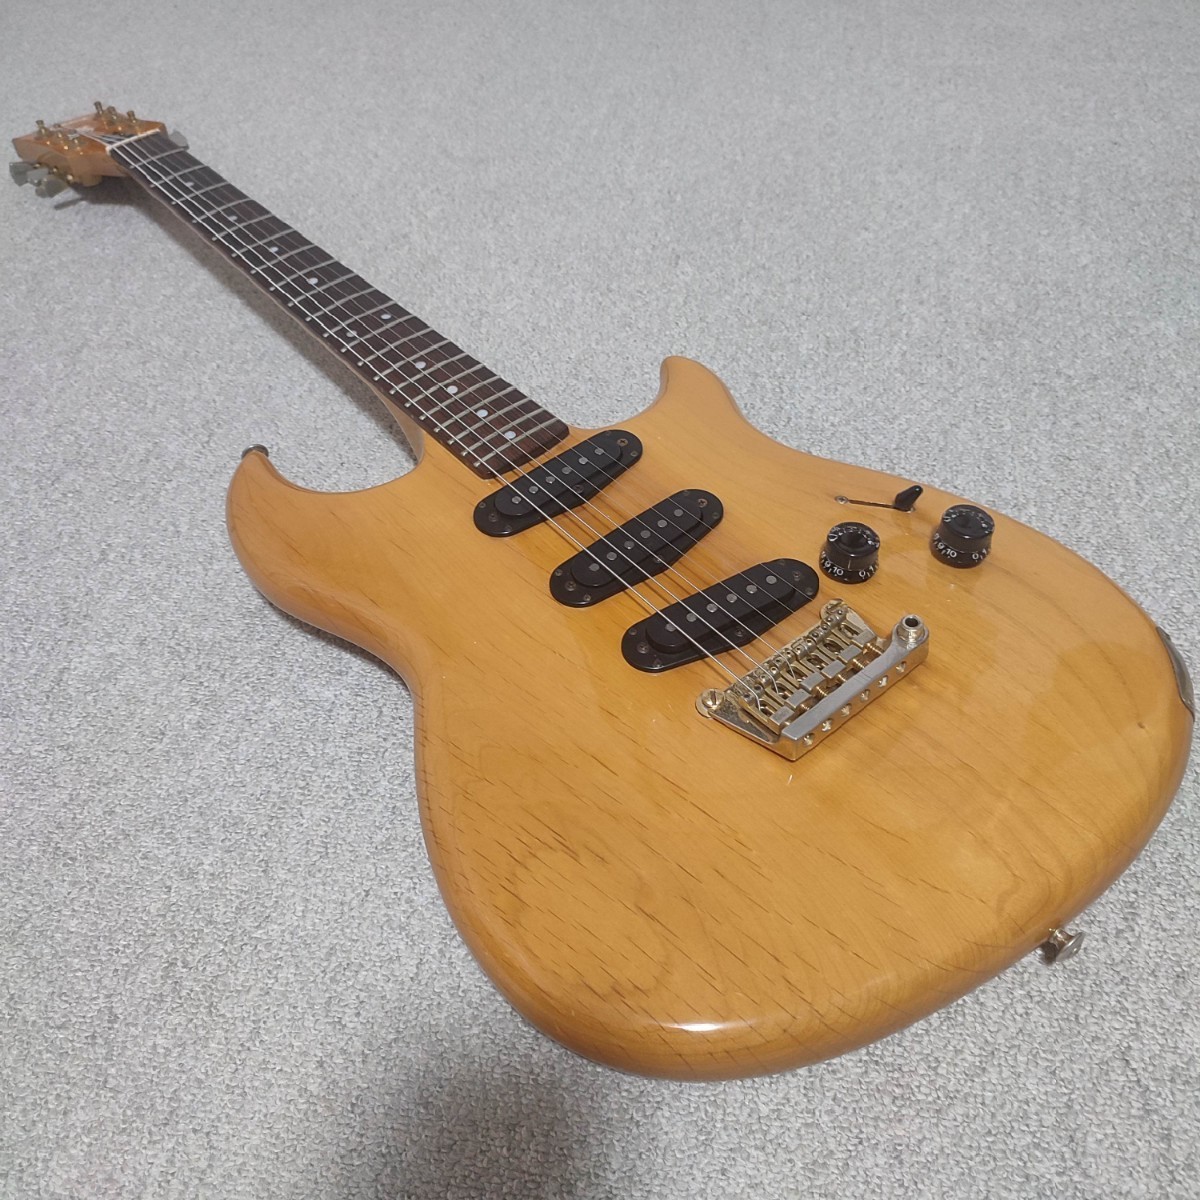 YAMAHA SC-5000 80年代 ジャパンビンテージ セットネック Fender Gibson PRS お探しの方へもオススメ!!_画像1